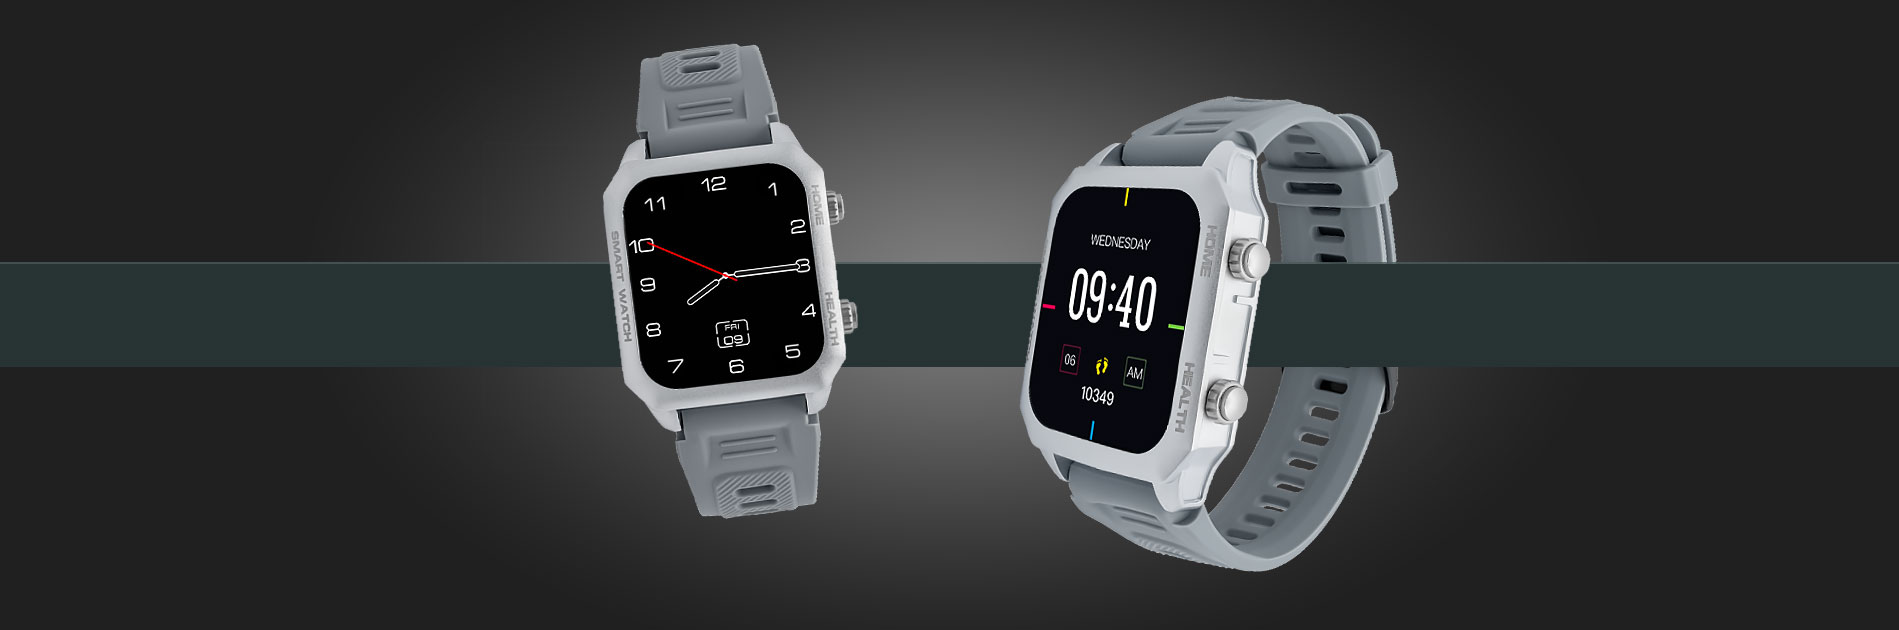 smartwatch z pomiarem ciśnienia i ekg watchmark kardiowatch